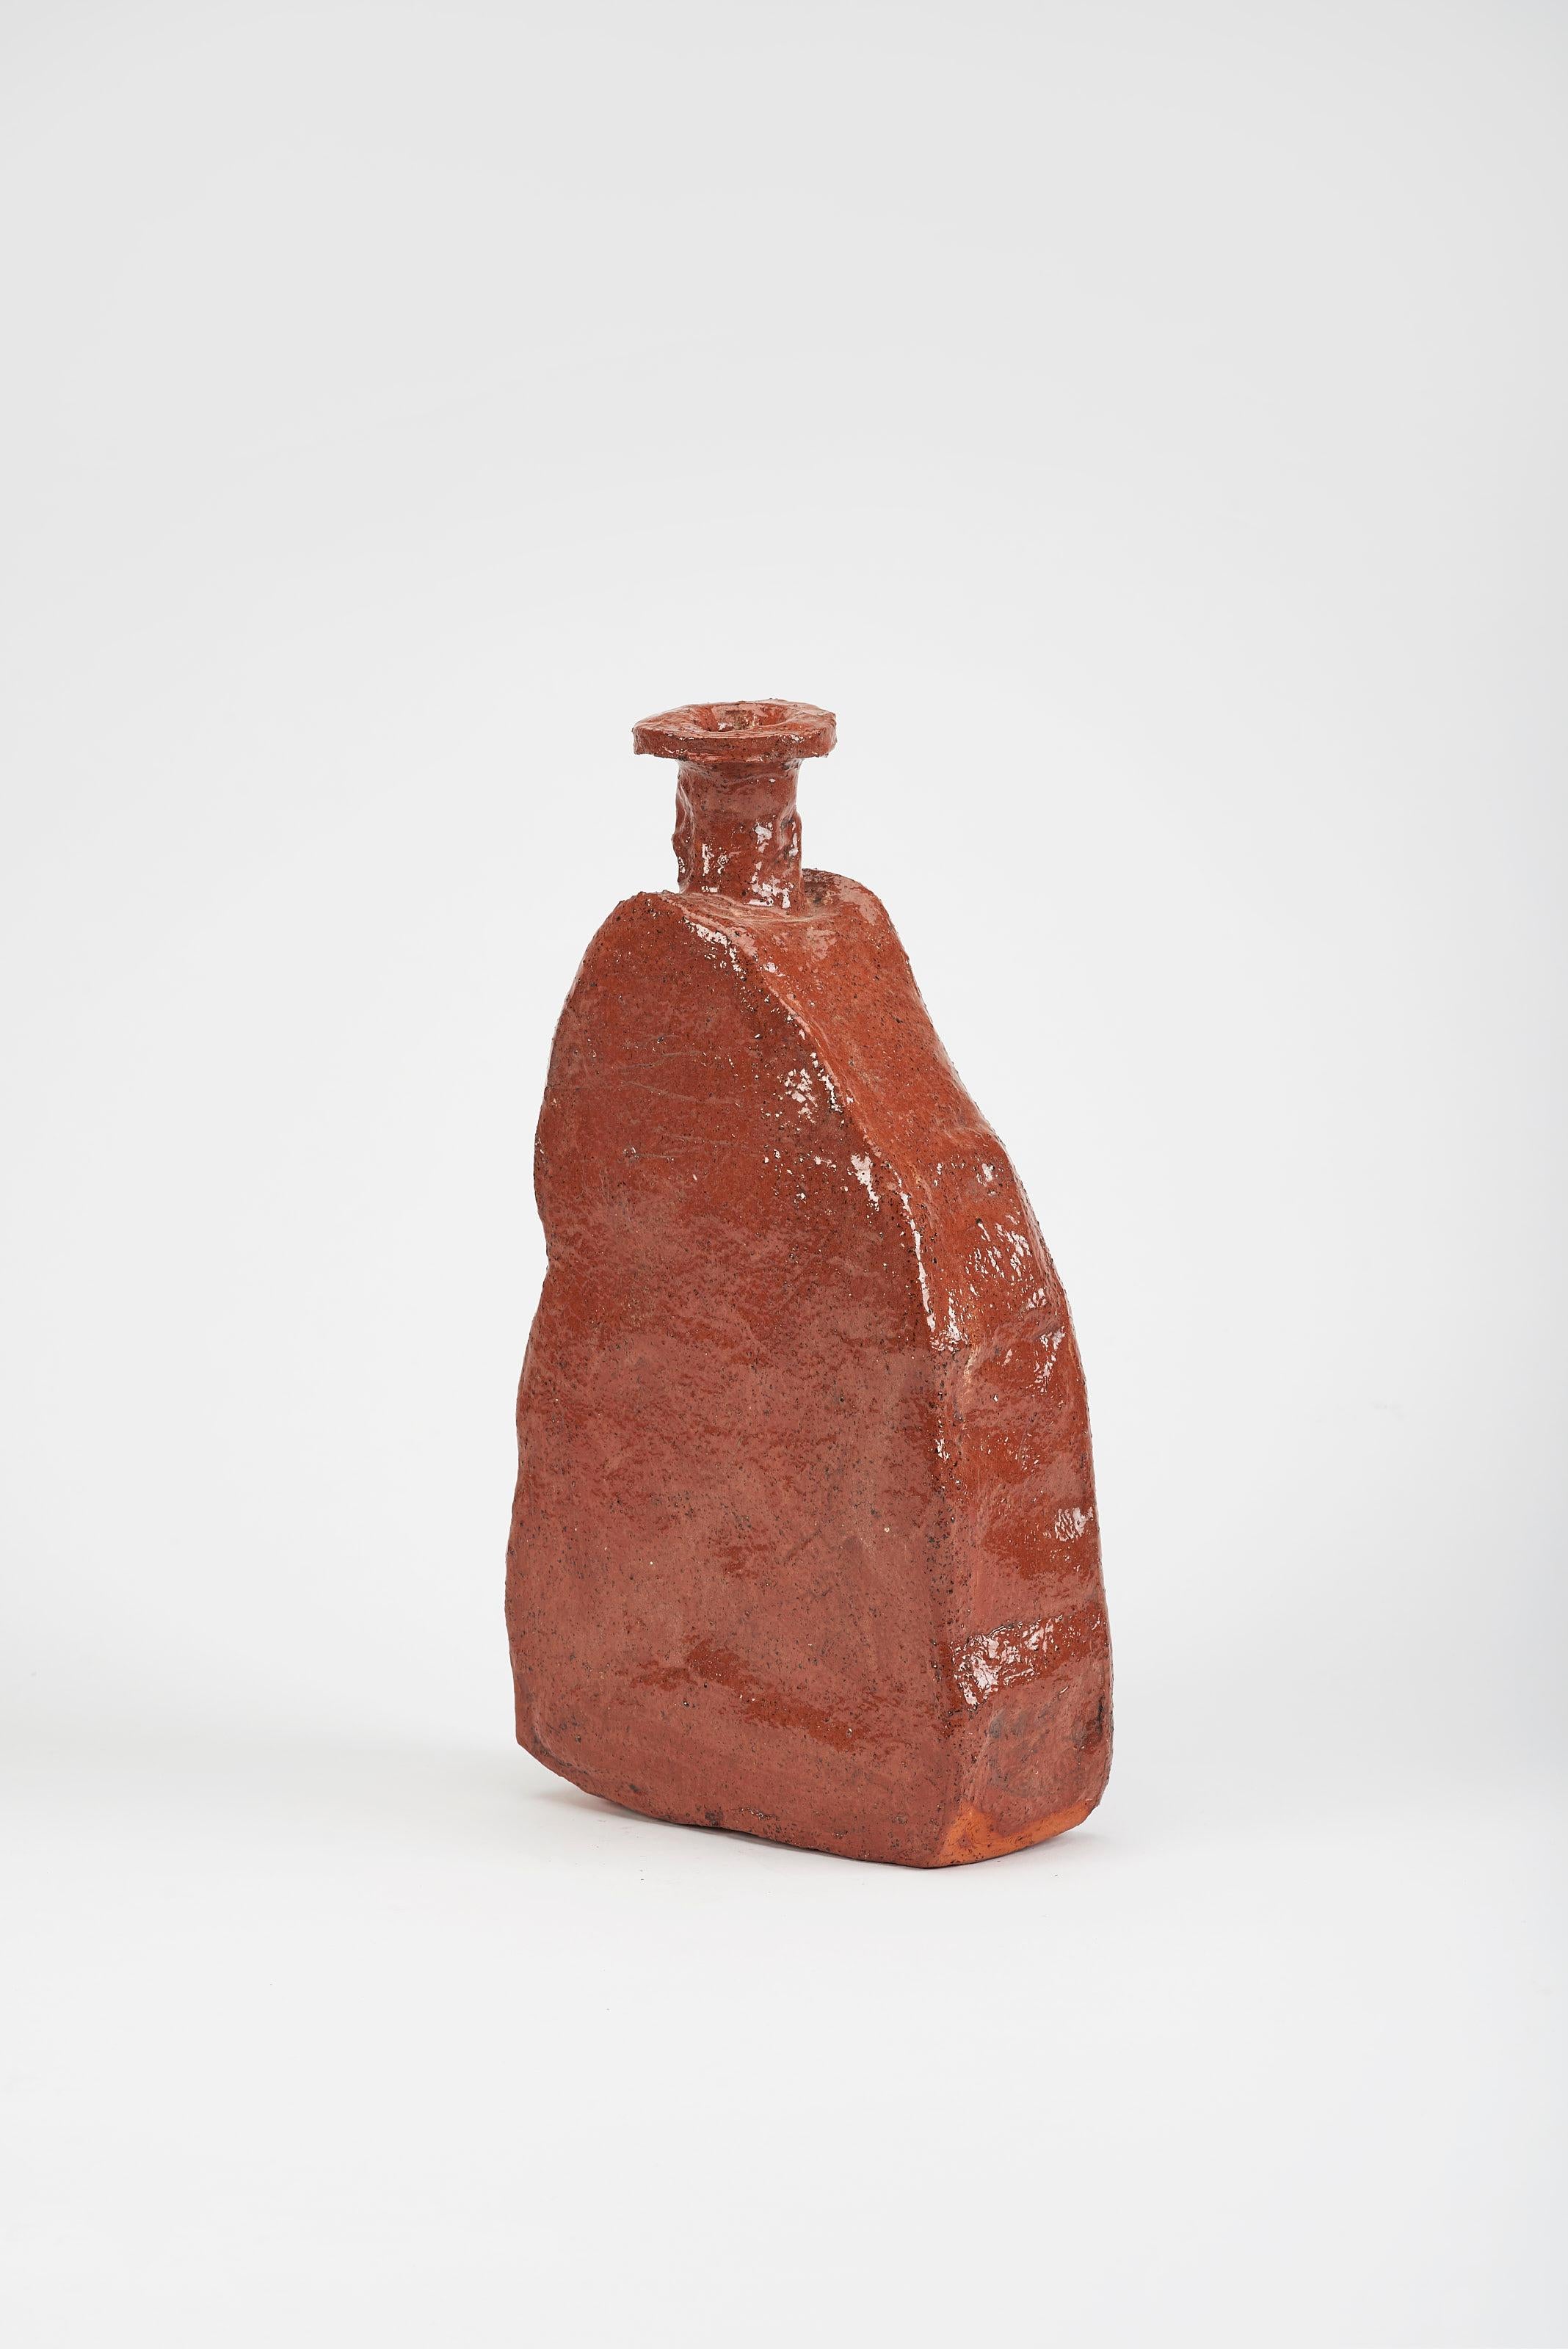 Dutch Aloi Medium Vase by Willem Van Hooff For Sale